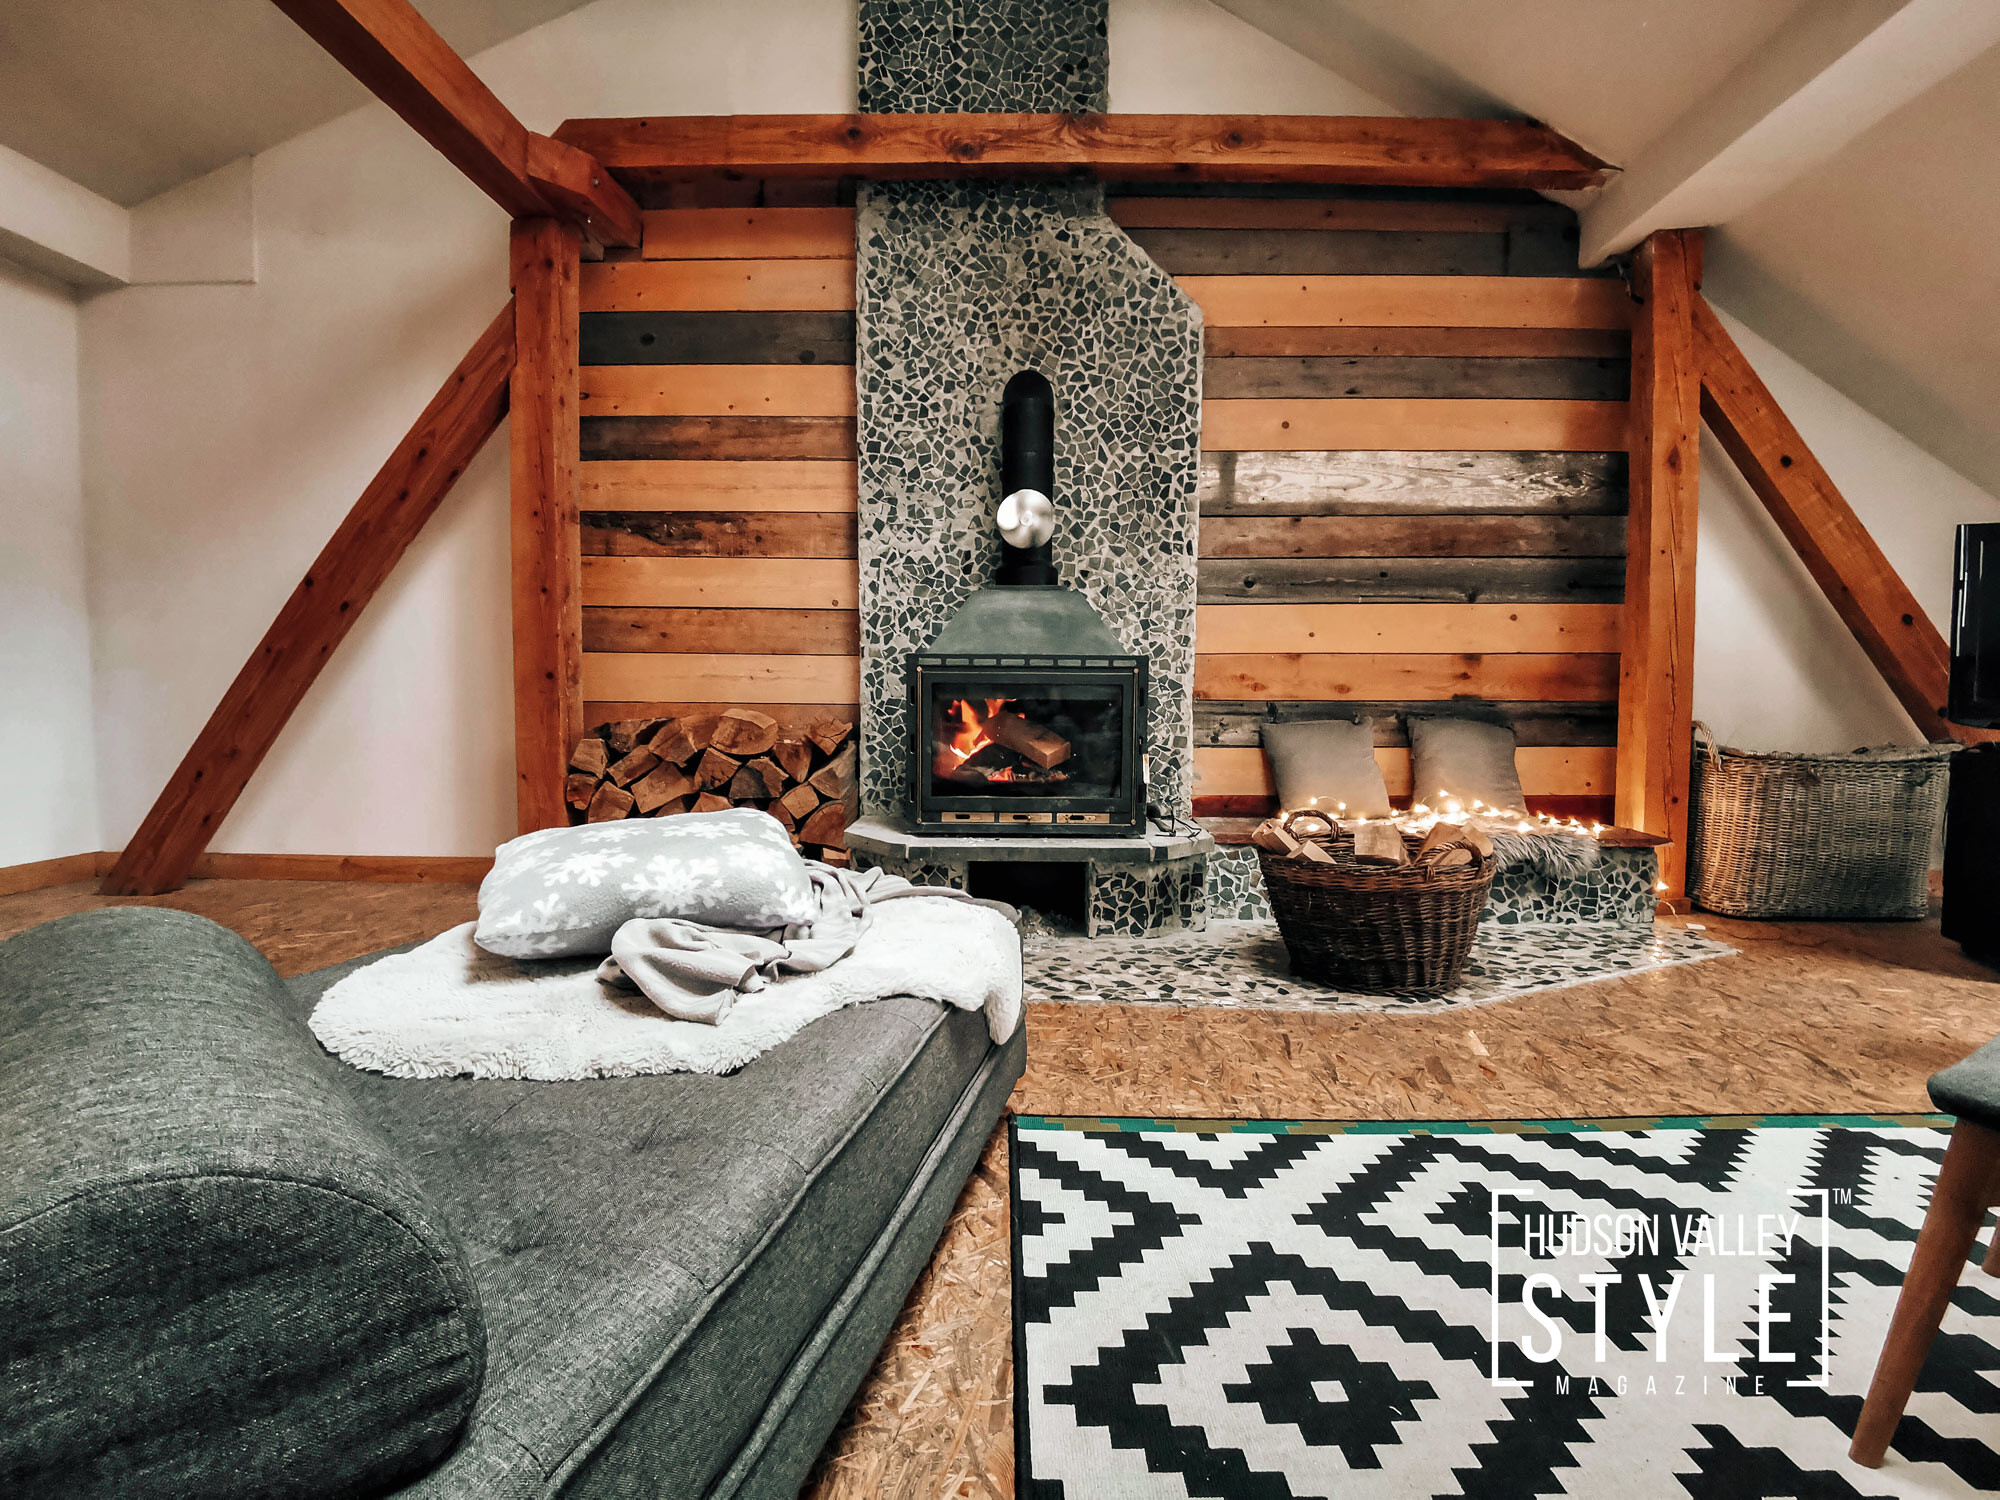 Exploring Rustic Cabin Theme – Home Decor 101 with Realtor Xiomara Marrero